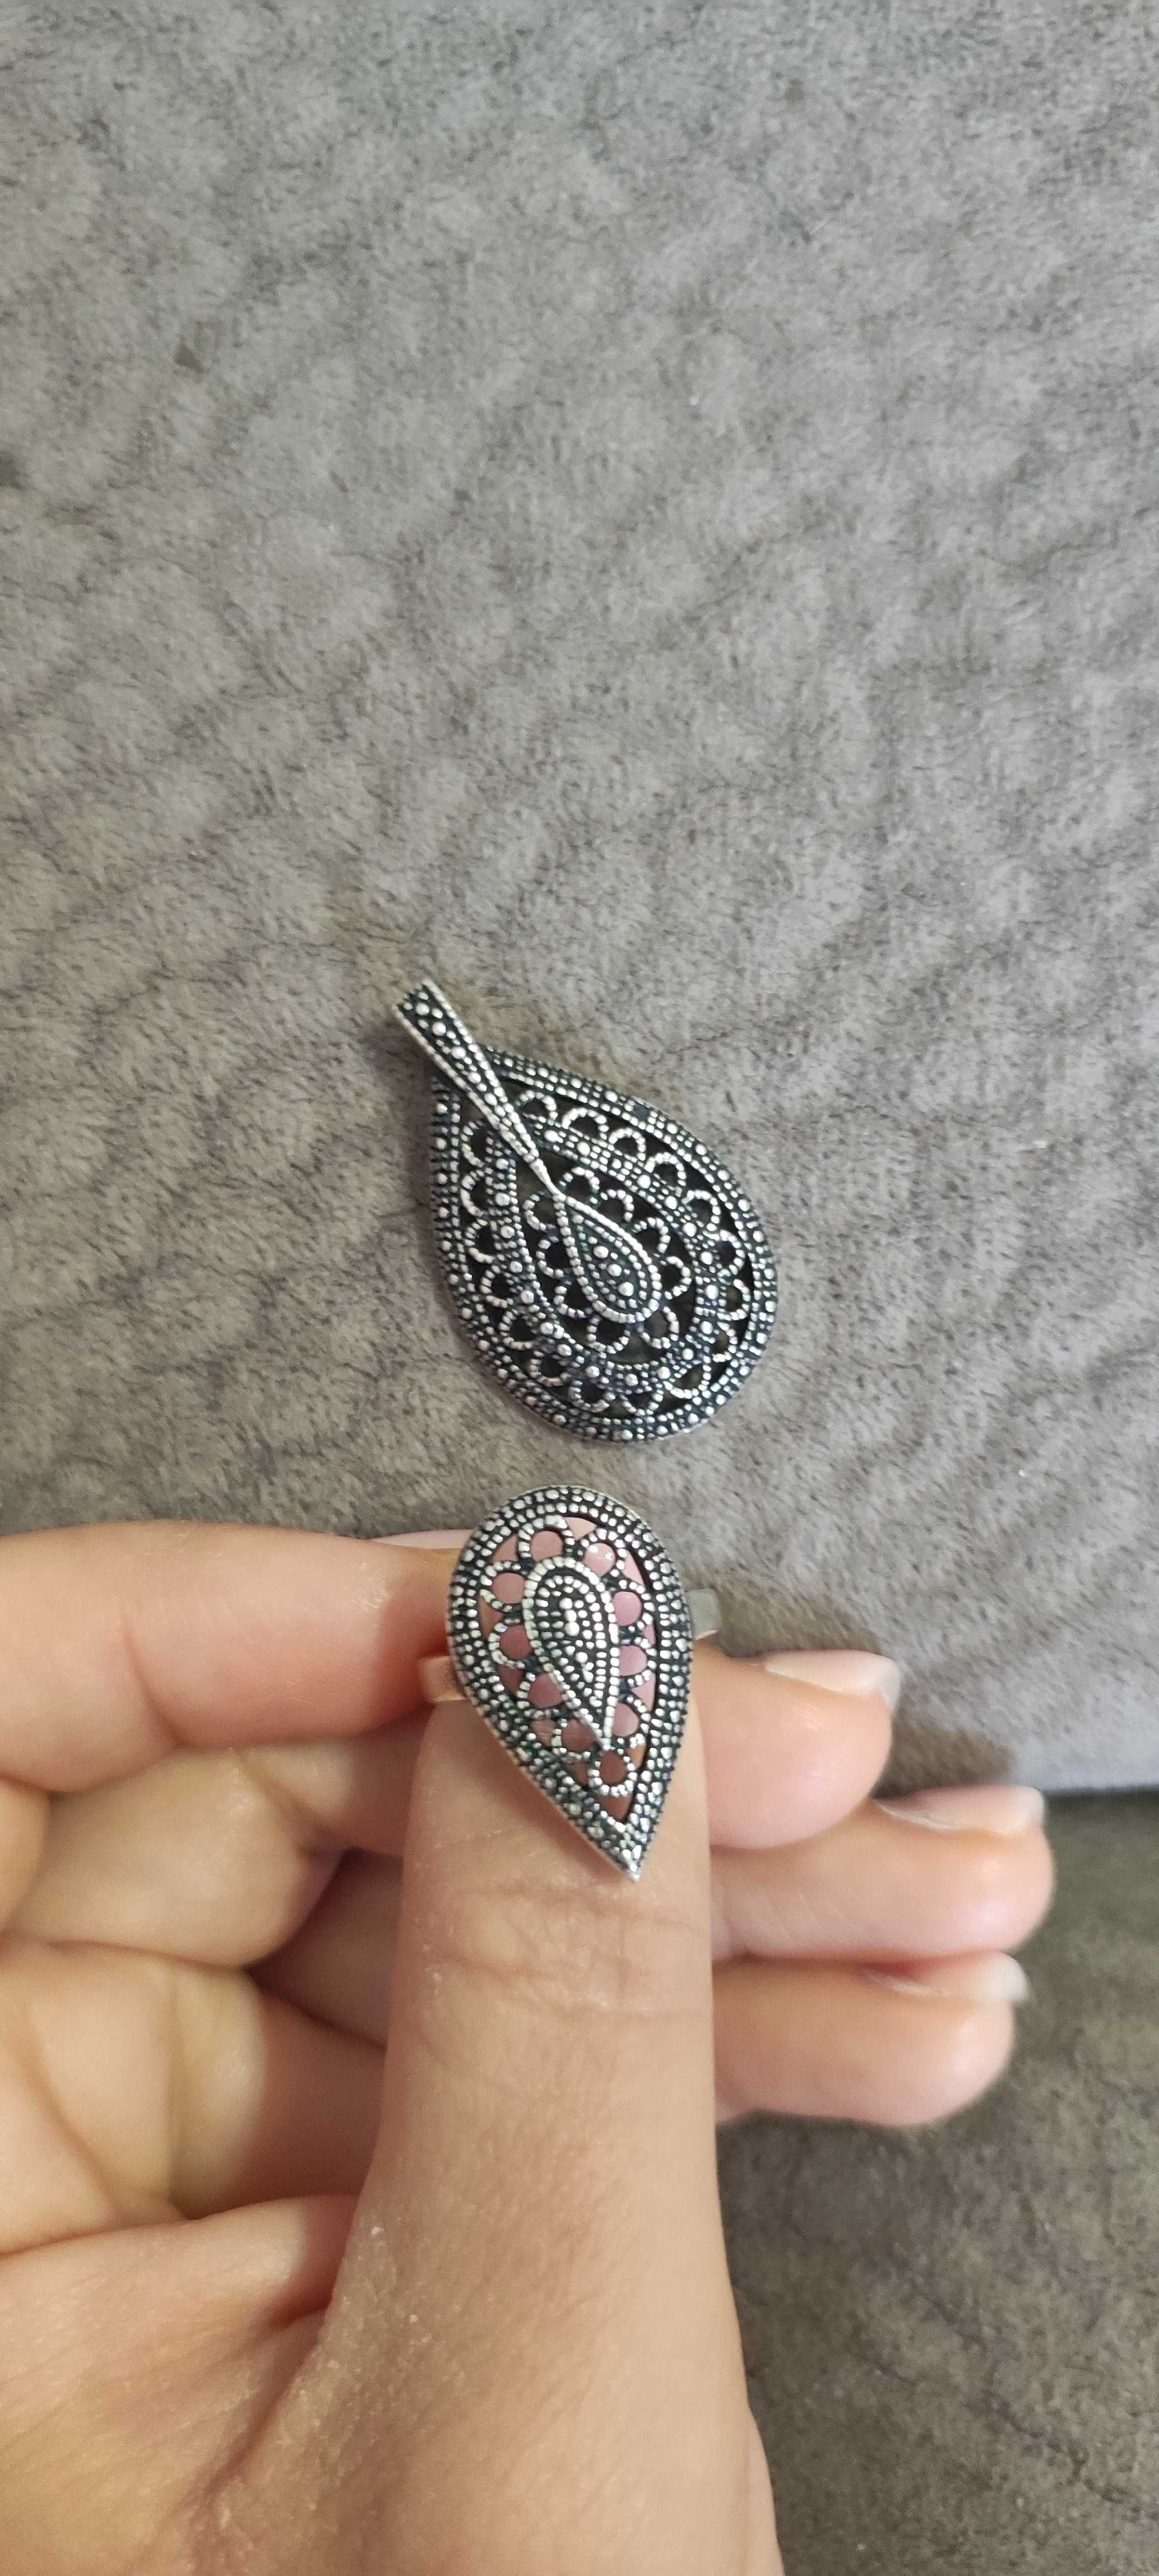 Уникален сребърен комплект пръстен и медальон в ретро стил.